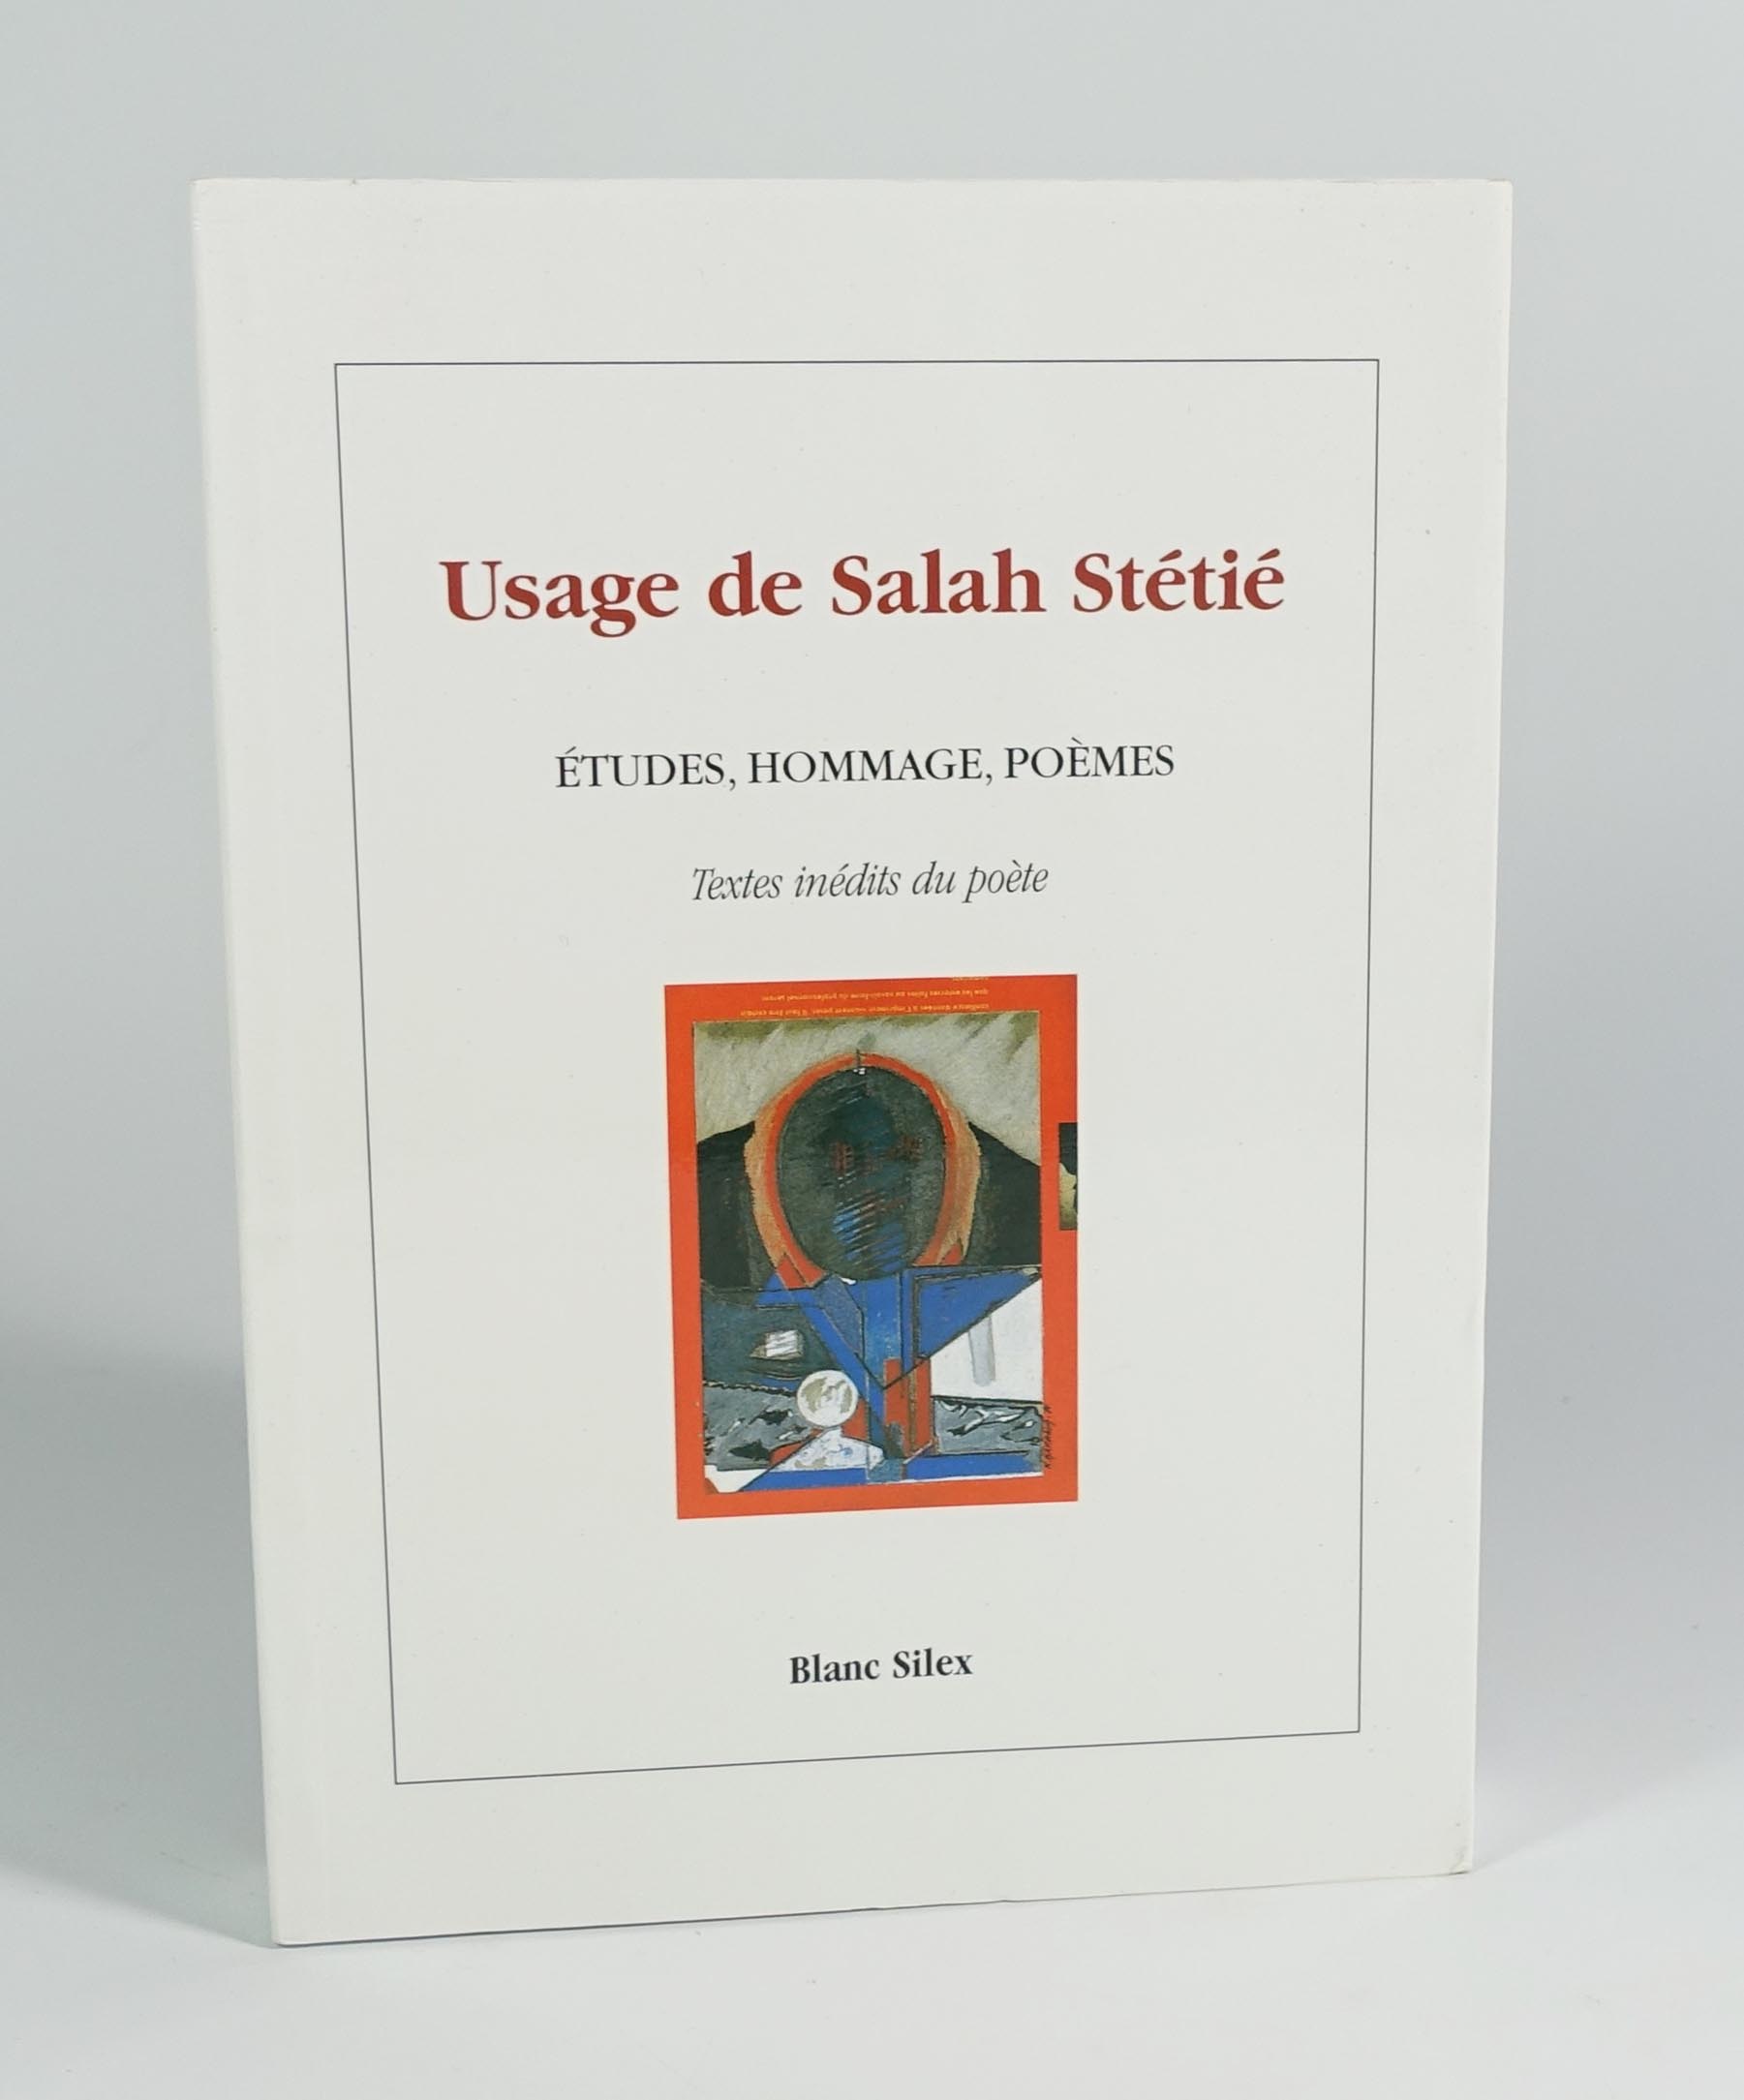 Usage de Salah Stétié. Etudes, hommage, poèmes. Textes inédits du poète. - Collectif) Salah Stétié, et al.